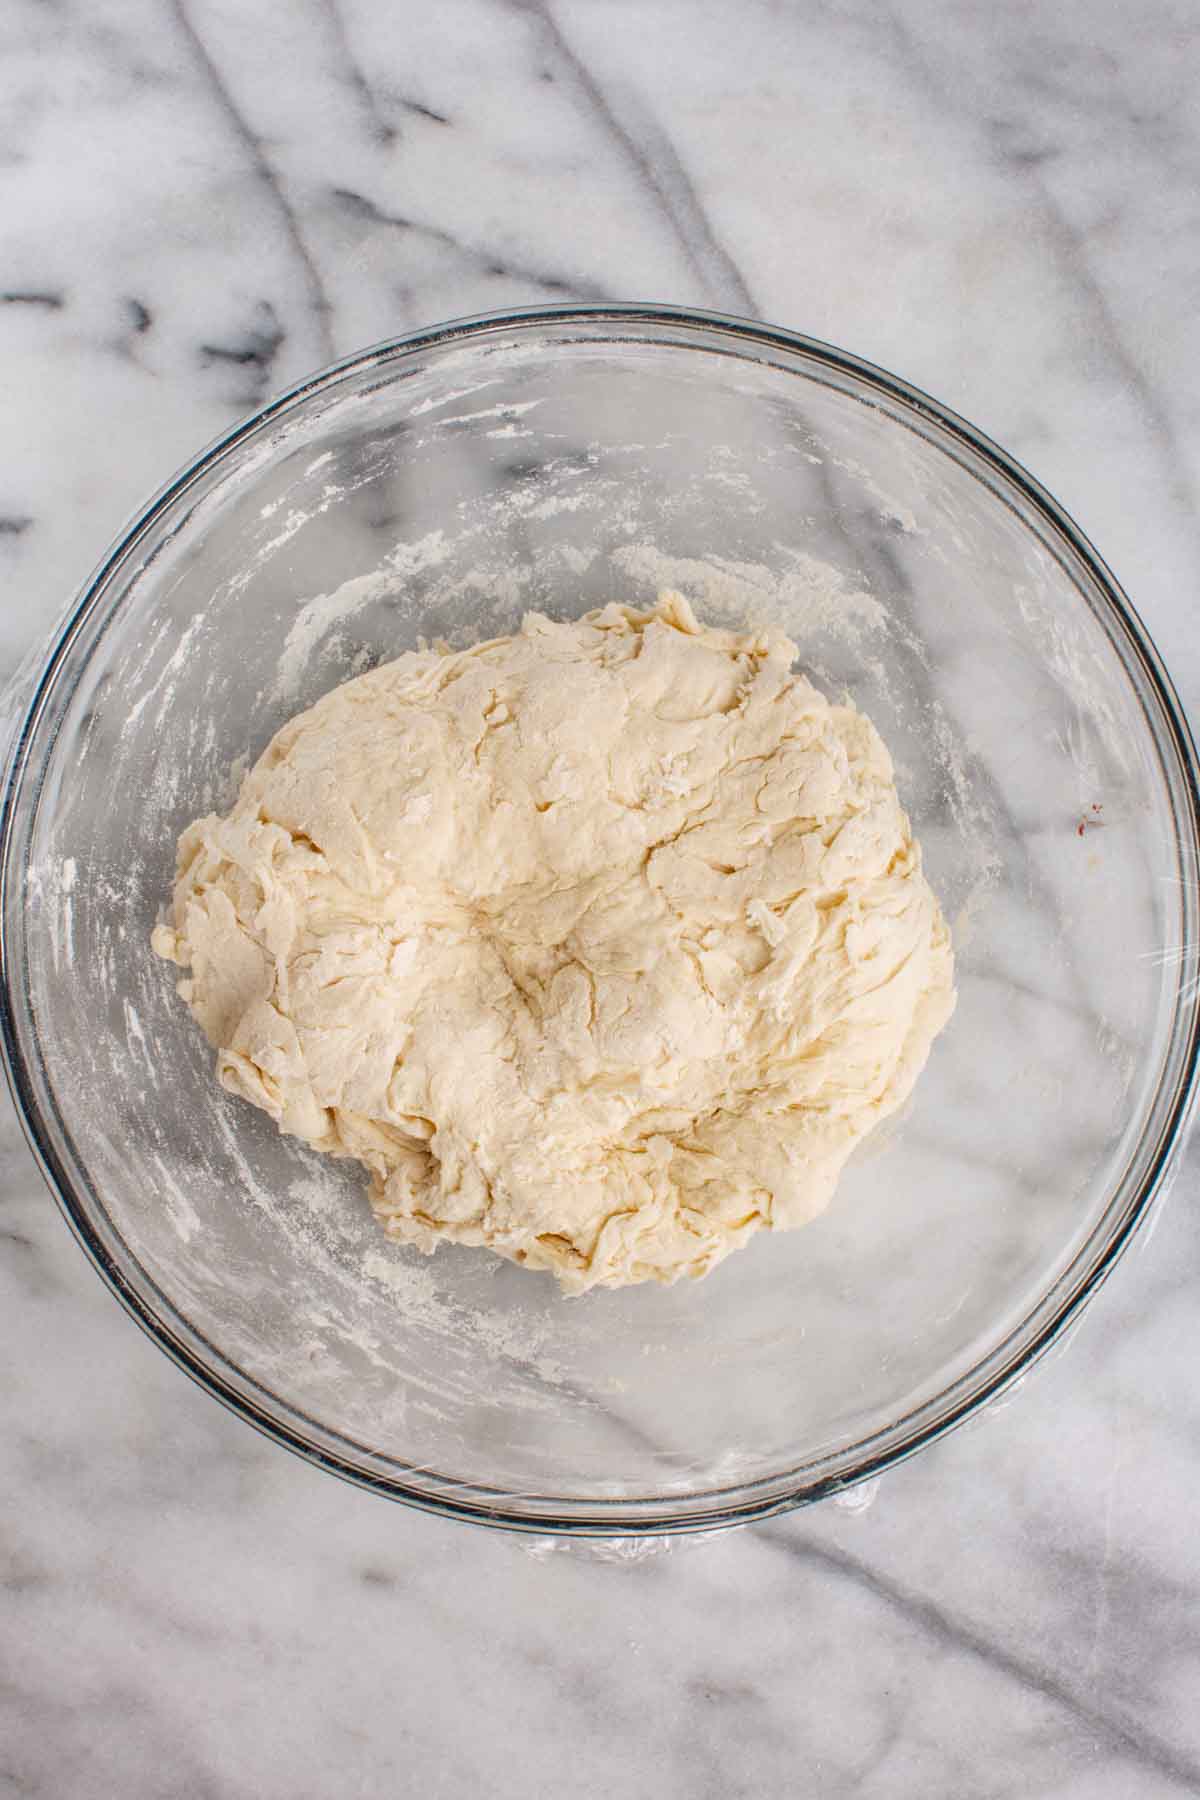 A bowl of shaggy focaccia dough being mixed.